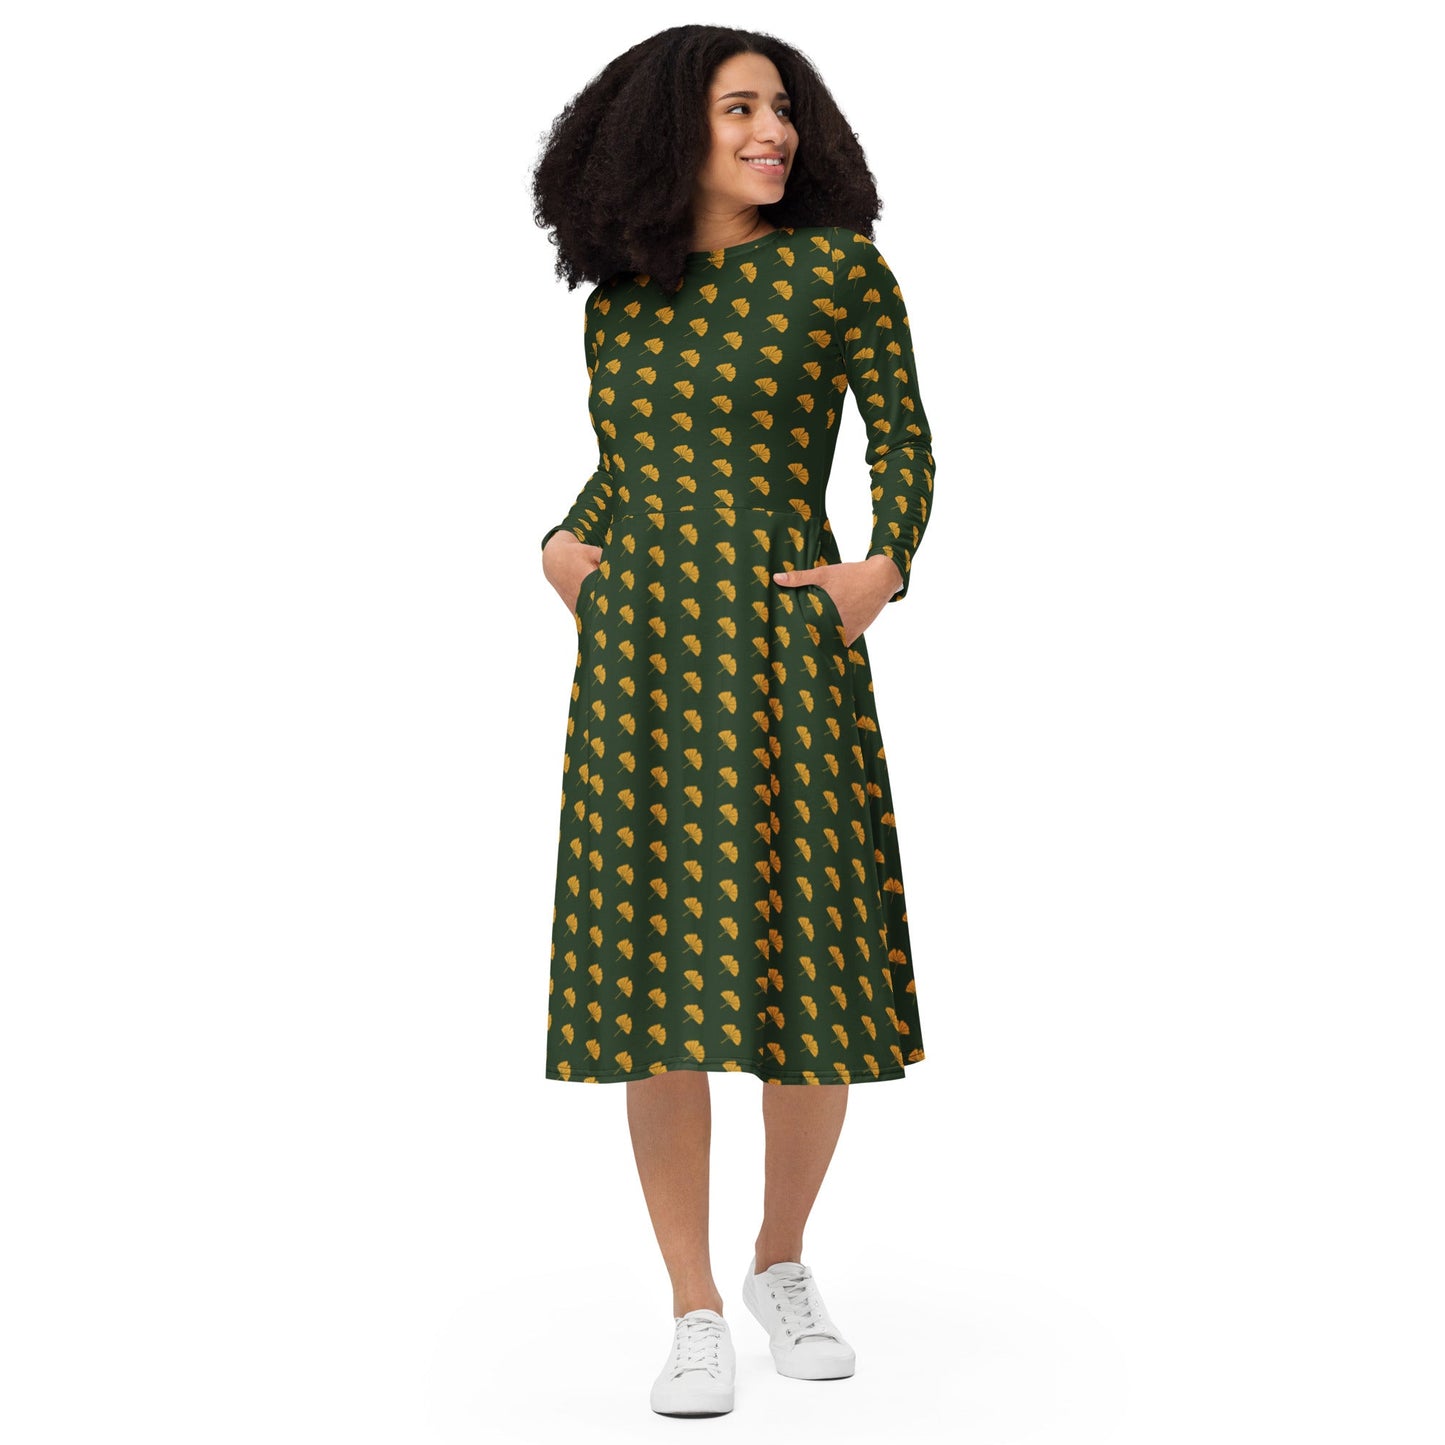 Ginkgo Leaf Long Sleeve Adventure Dress with pockets - Appalachian Bittersweet -